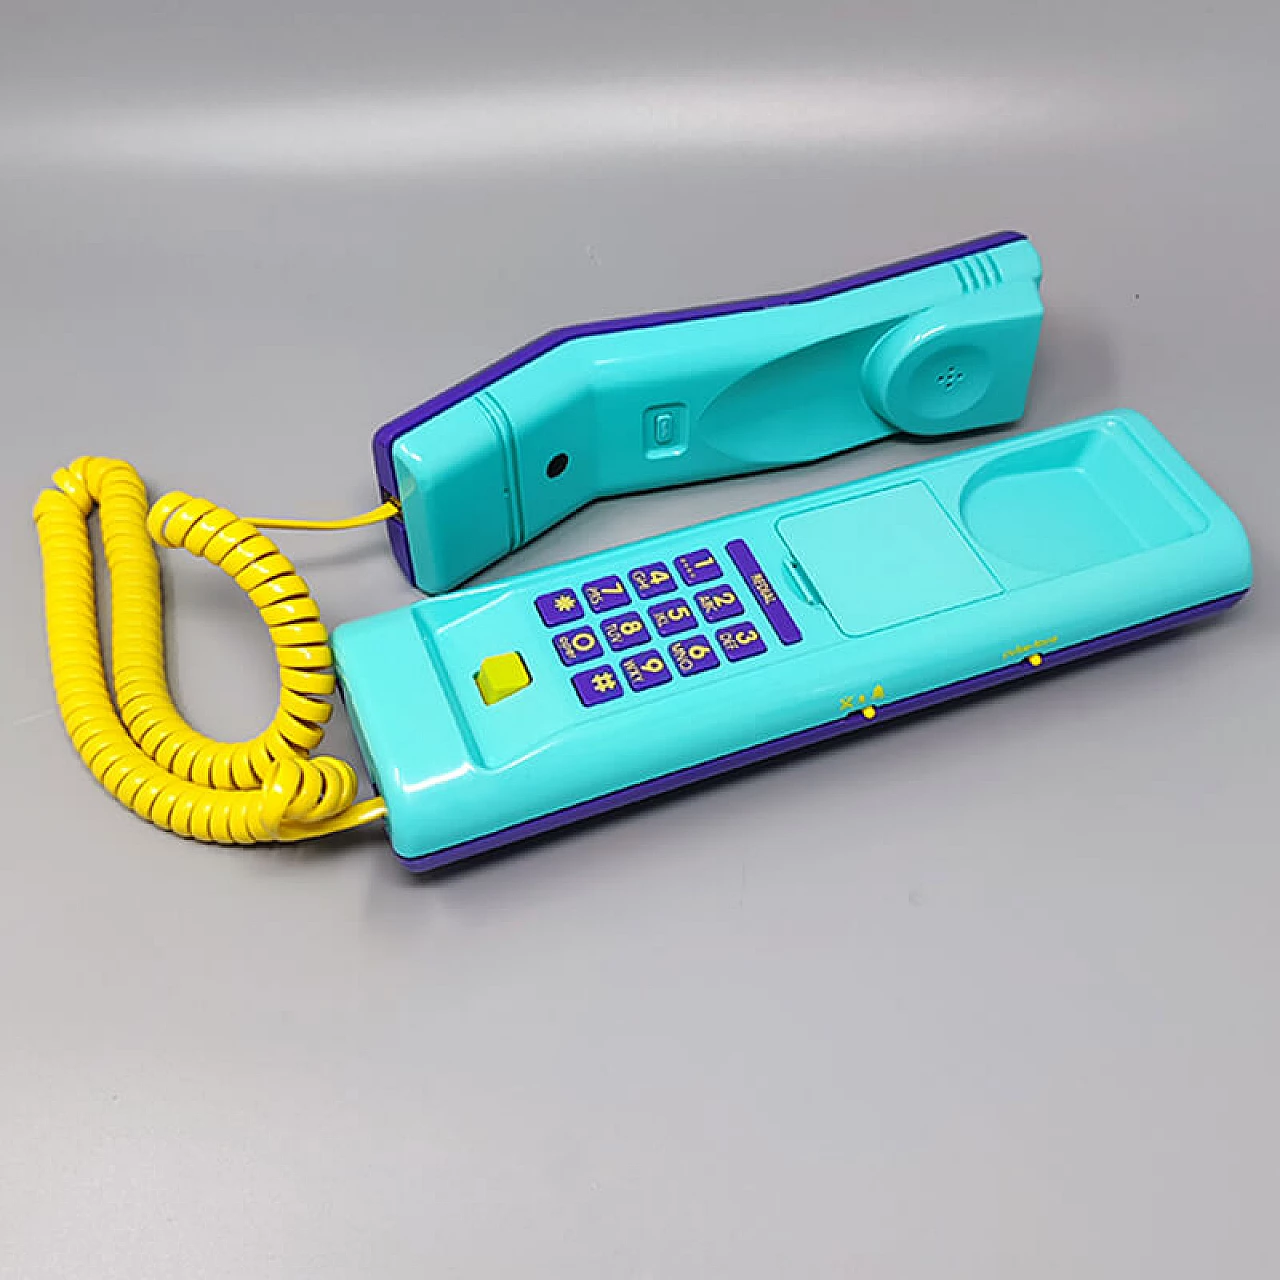 Telefono fisso Swatch Twin Phone Puzzle, anni '80 6